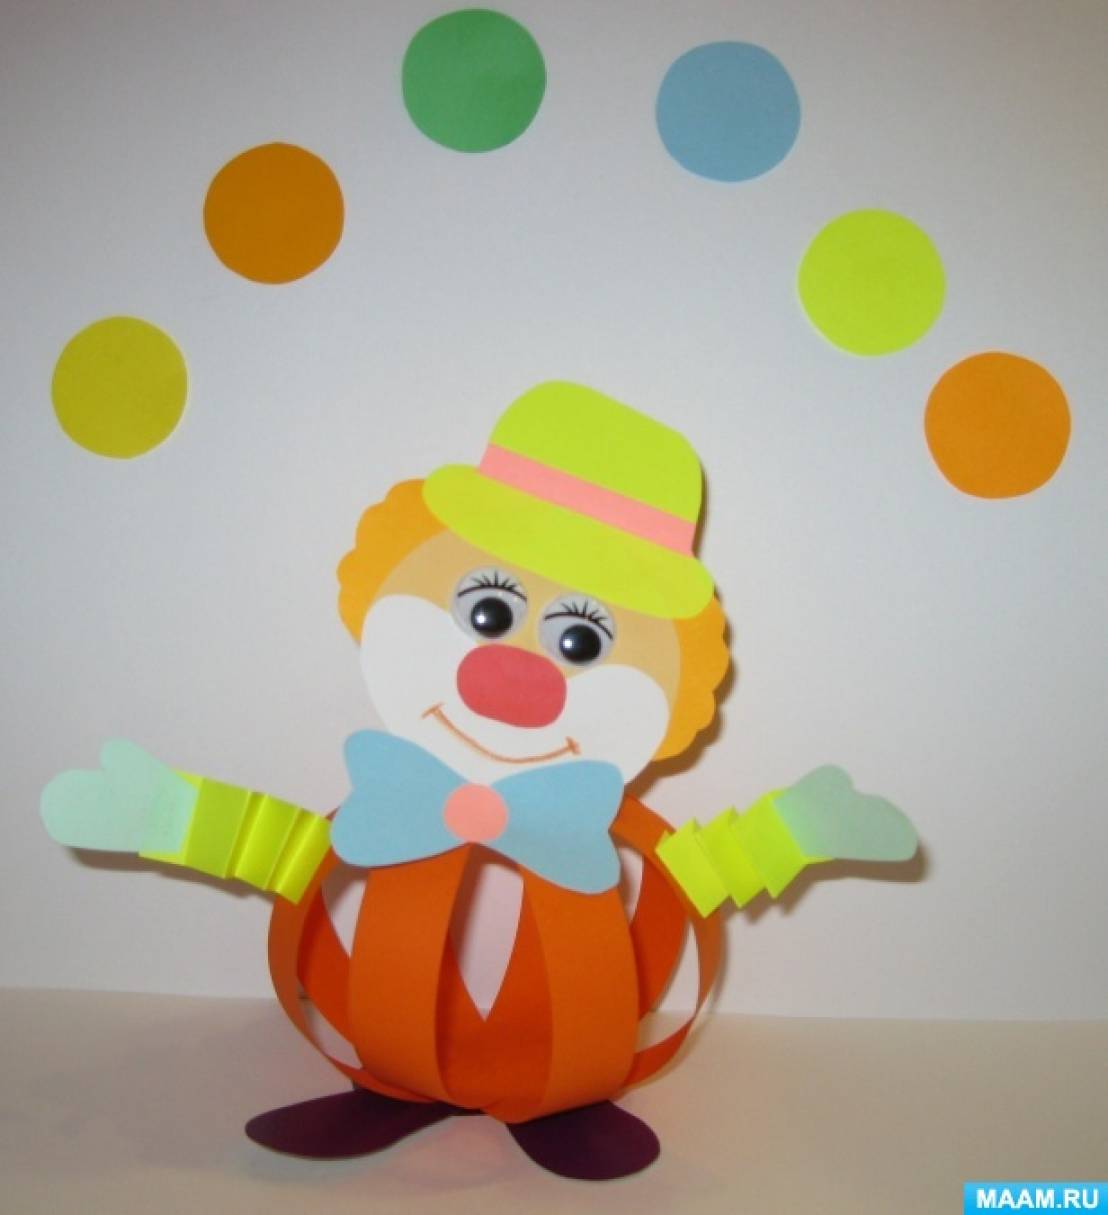 Клоун из бумаги на 1 апреля – интерактивная детская поделка